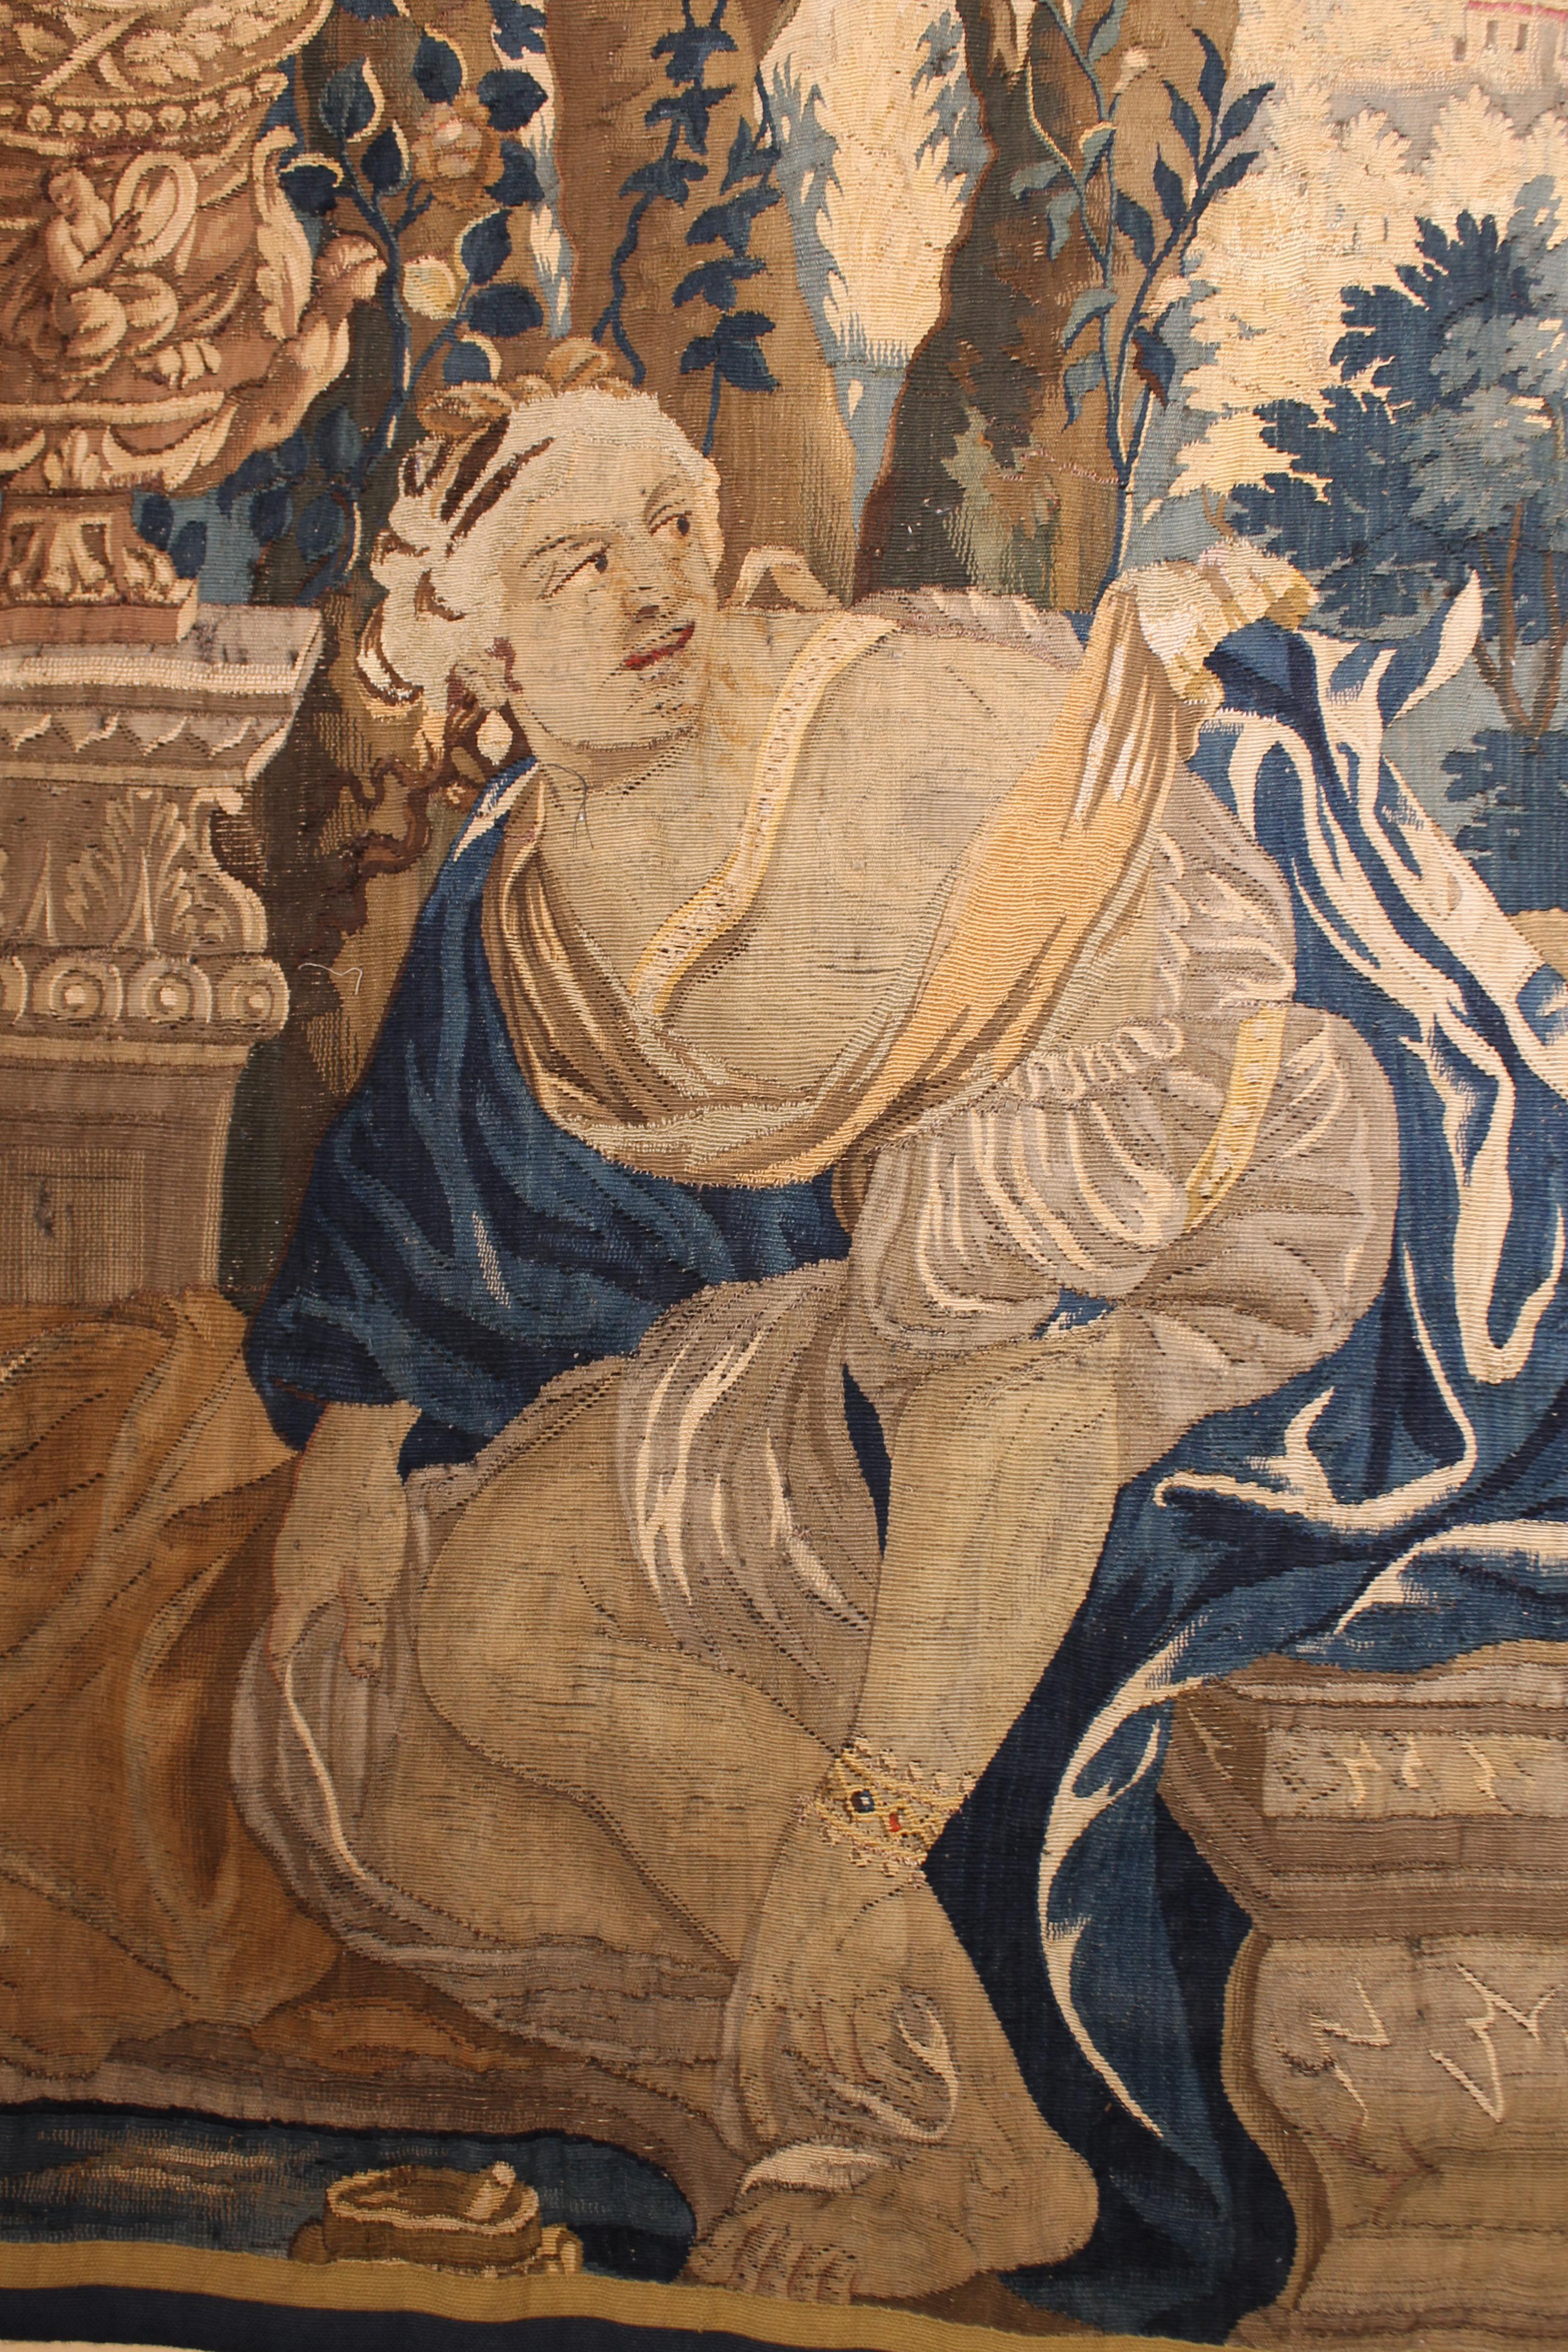 Fine tapisserie flamande de Bruges du 17ème siècle
Cette belle tapisserie représente une scène mythologique d'une femme épiée par deux vieillards. 

Perspective très intéressante dans cette tapisserie grâce à la femme de la première scène et aux